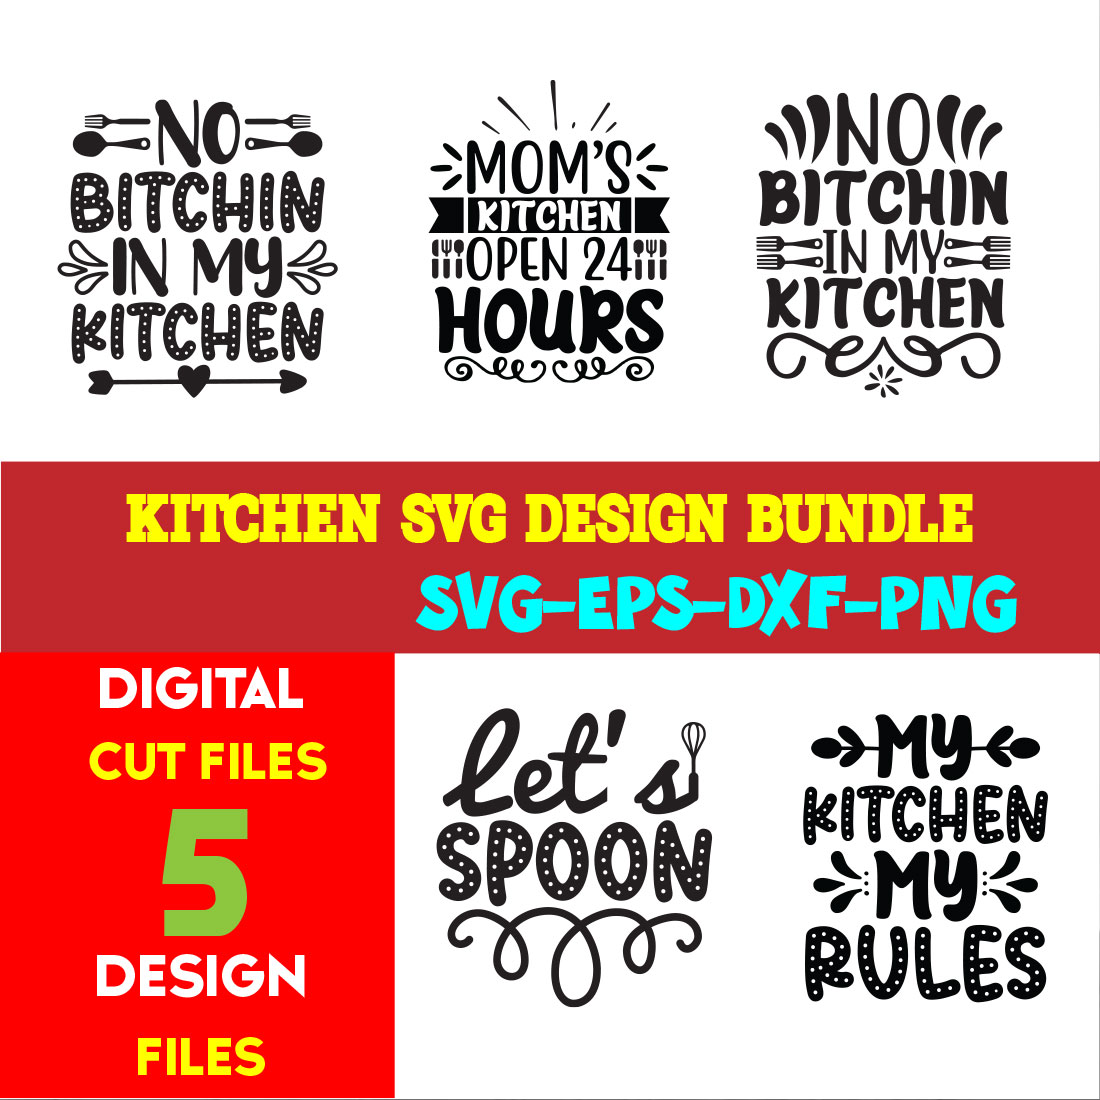 Kitchen T-shirt Design Bundle Vol-03 cover image.